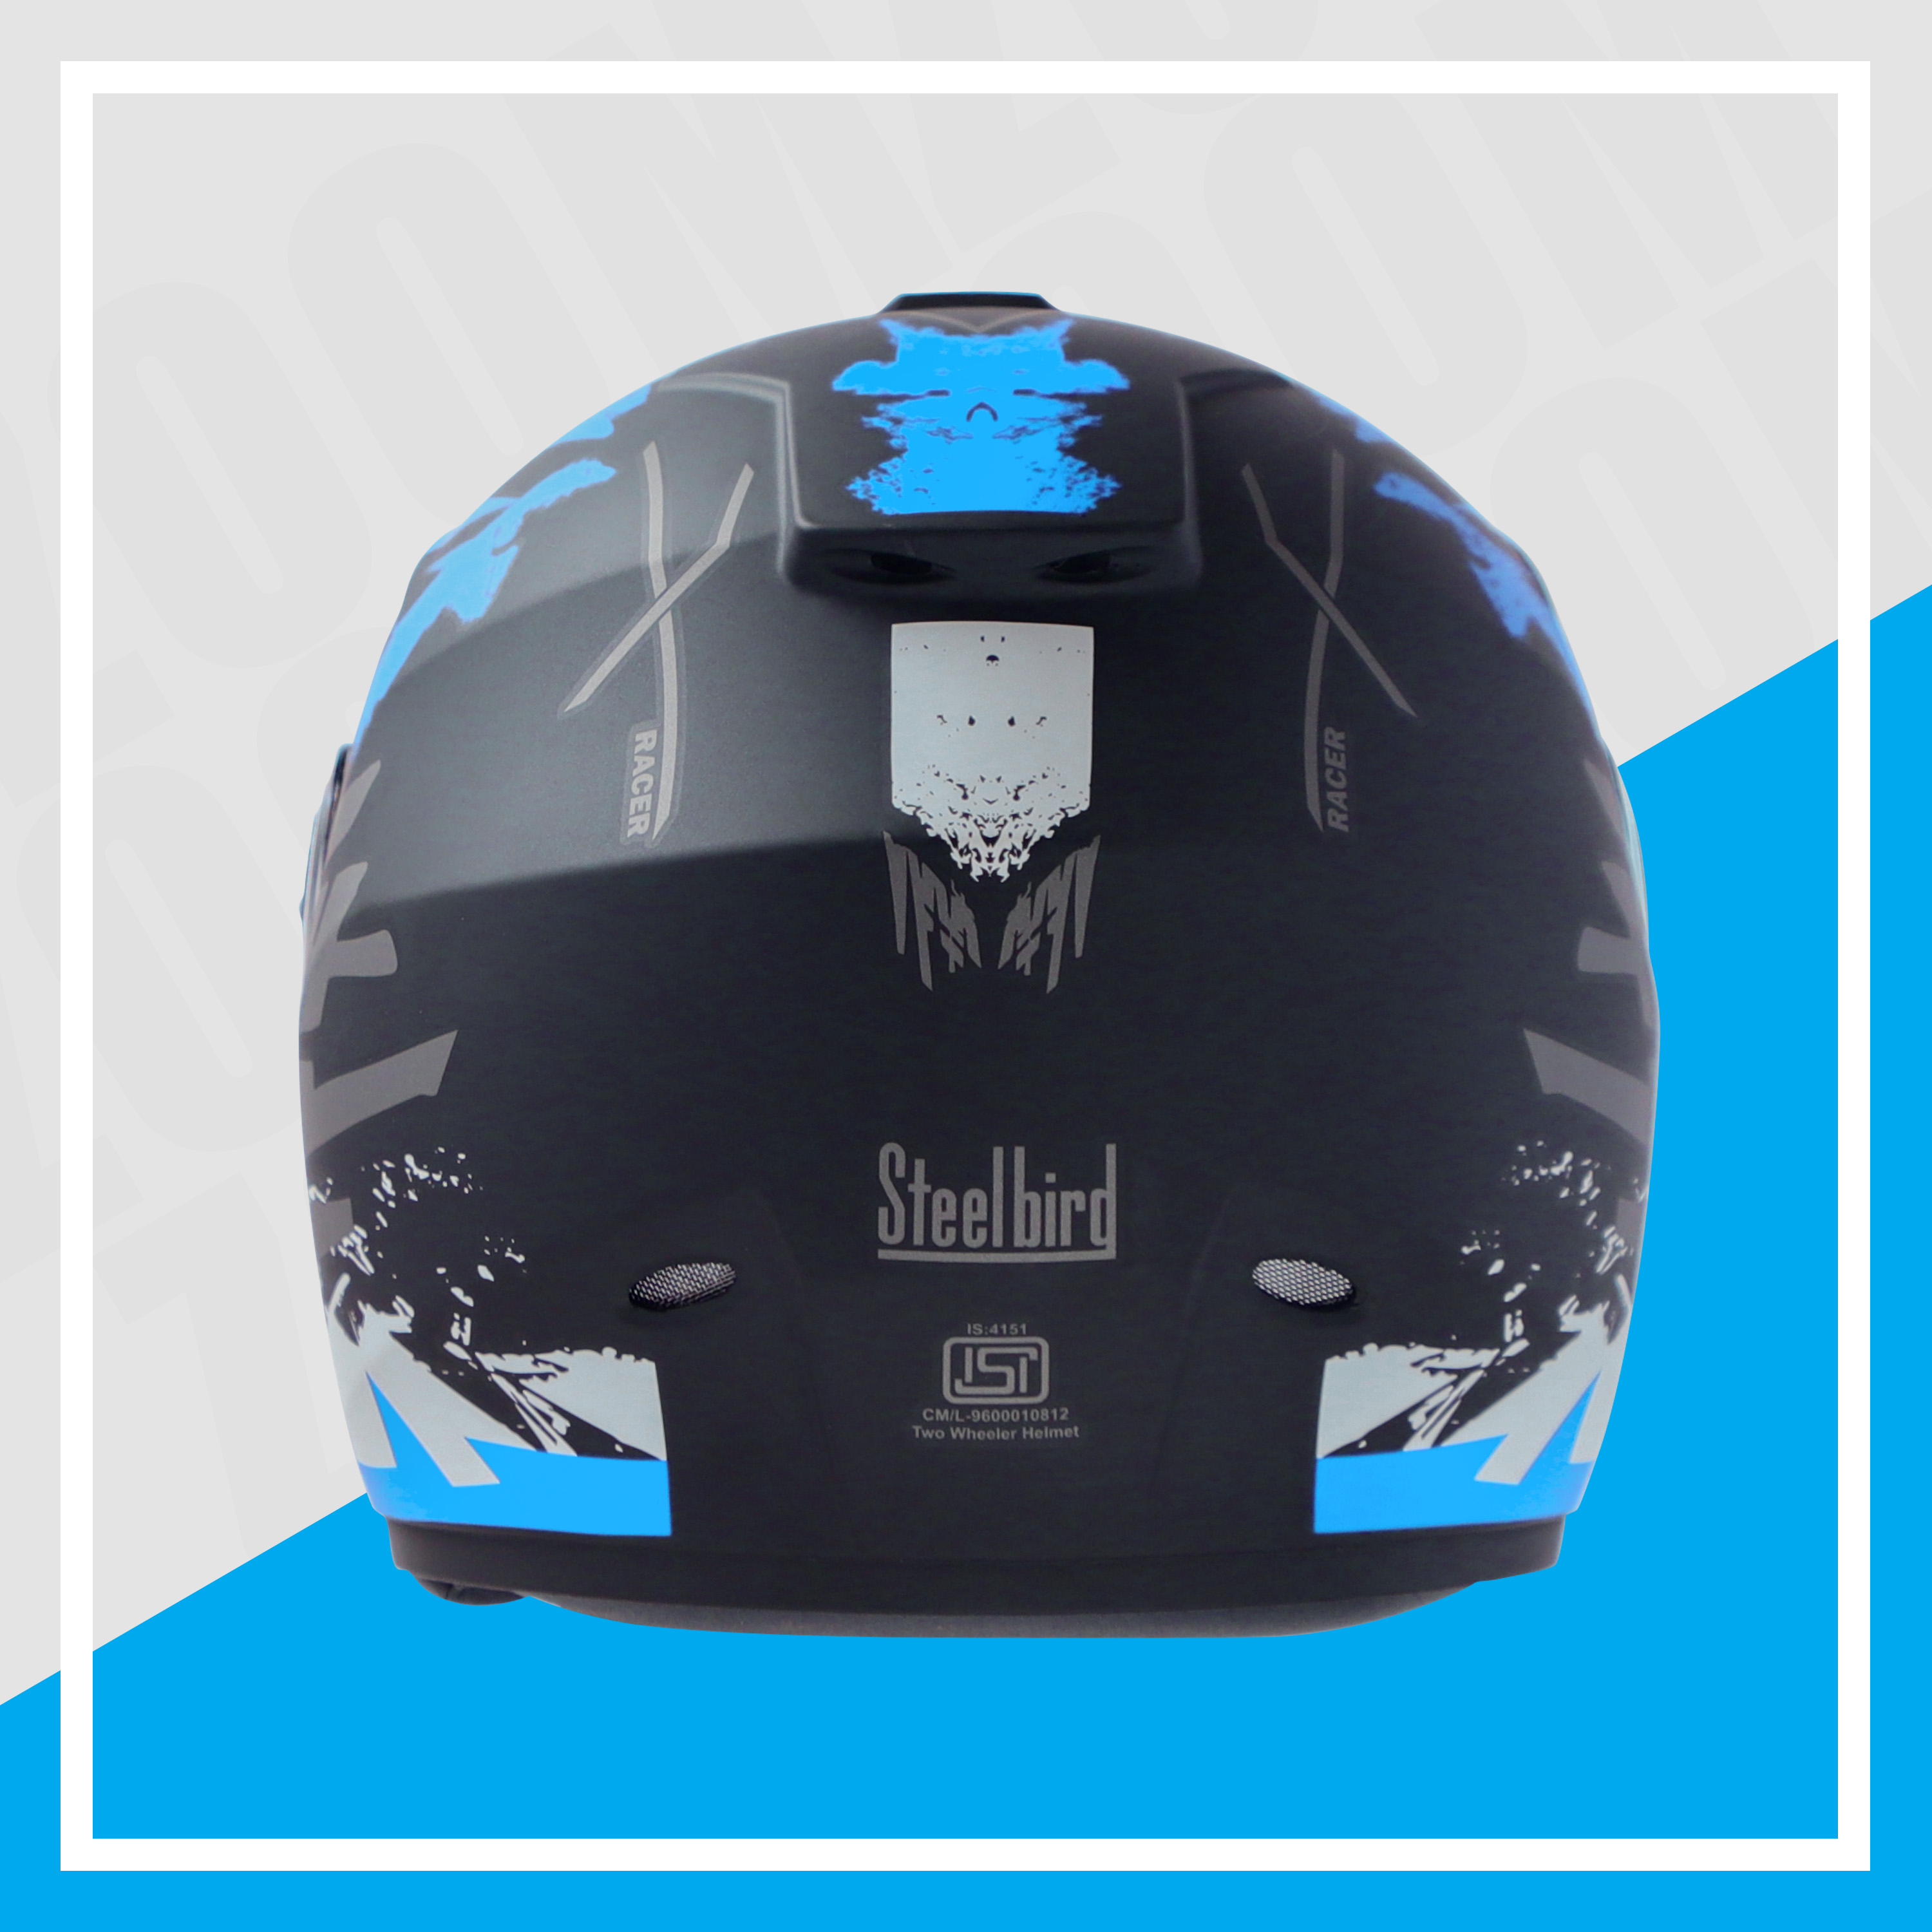 Steelbird SBH-11 Zoom Racer ISI Certified Full Face Graphic Helmet For Men And Women (Matt Black Jazz Blue With Chrome Silver Visor)